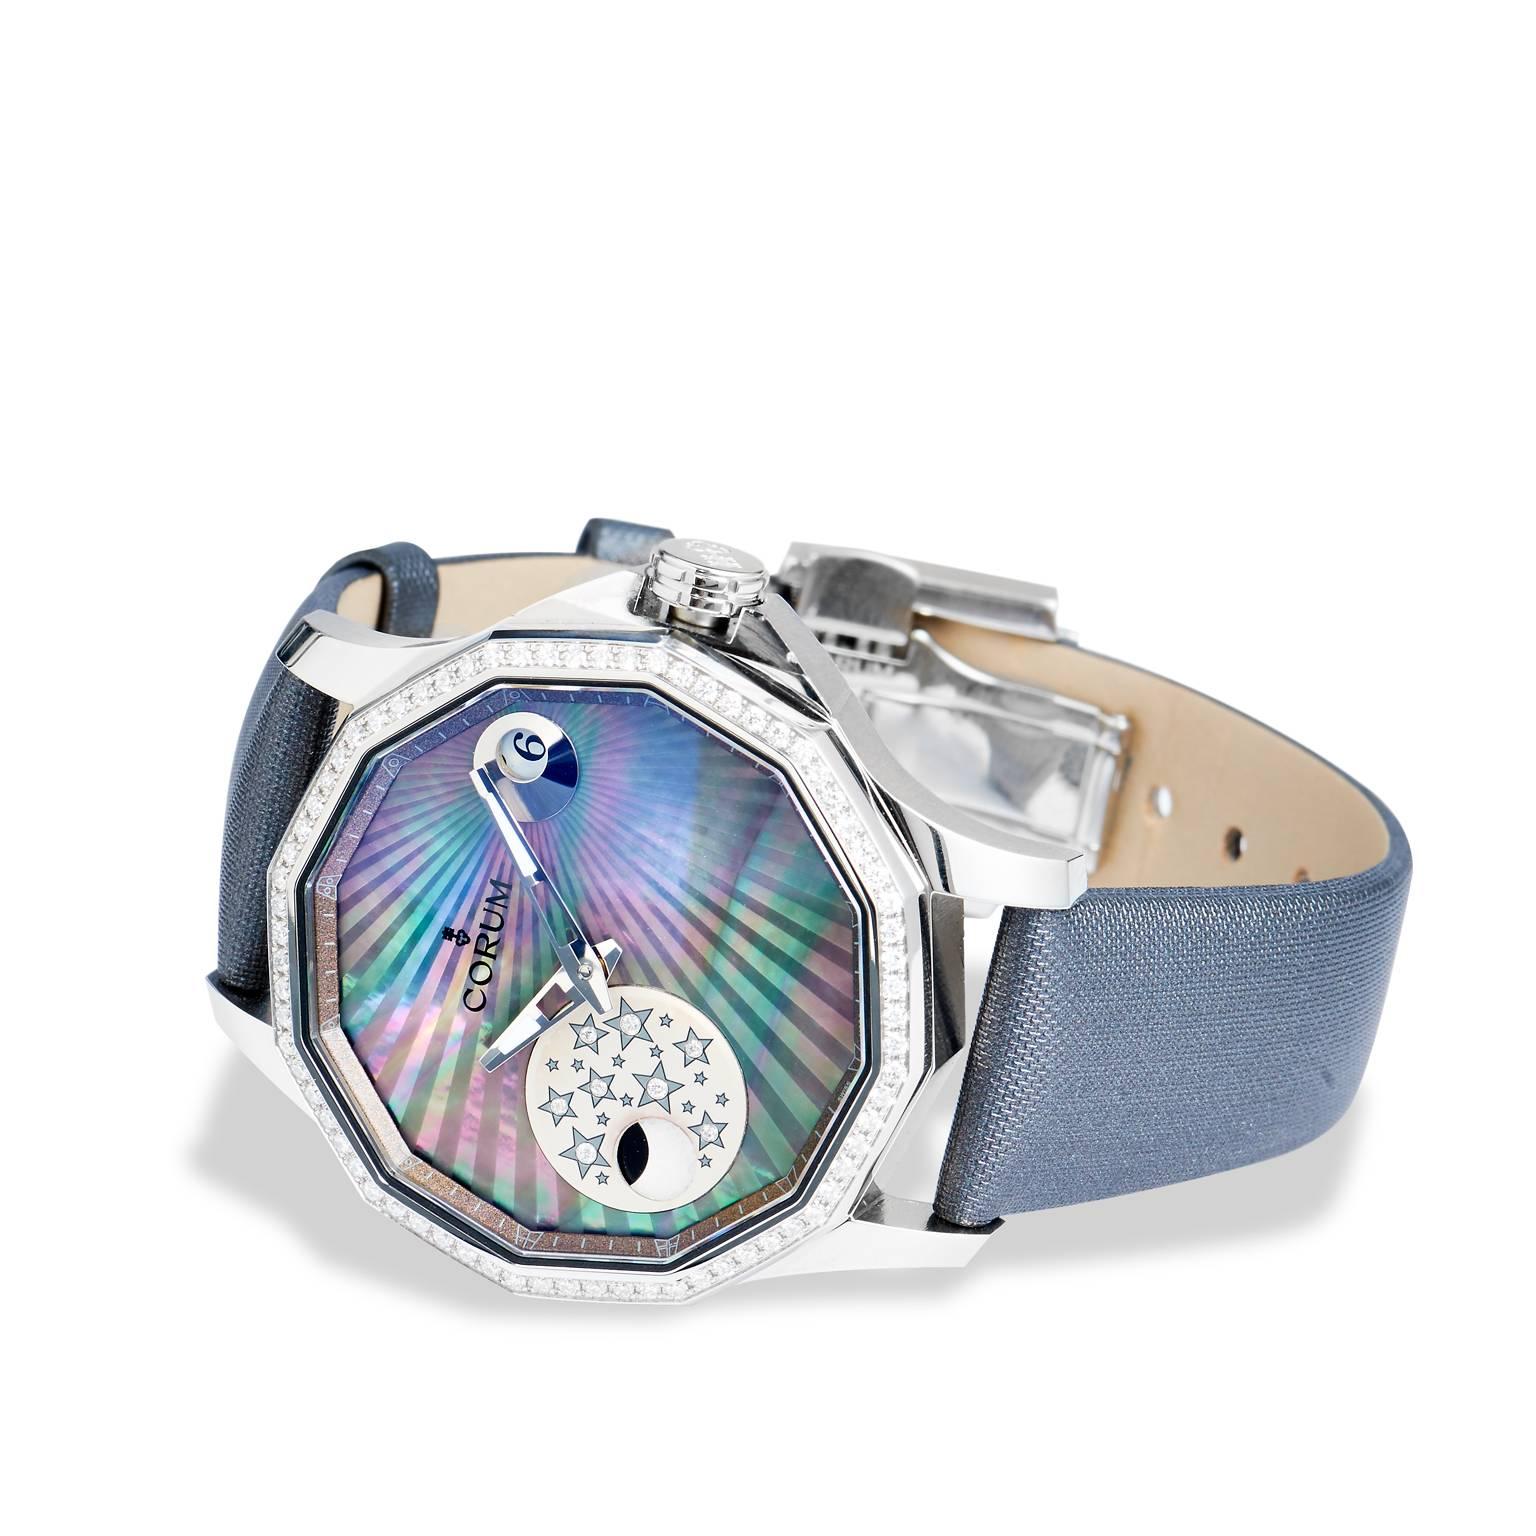 Corum Edelstahl Diamant Lünette Mystery Moon Armbanduhr

Brandneue Admirals Legende Corum Uhr verfügt über eine 38 mm Geheimnis Mond Zifferblatt mit Diamant-Lünette und schwarzem MOP-Zifferblatt. Die Uhr wird mit einem grauen Armband geliefert. 